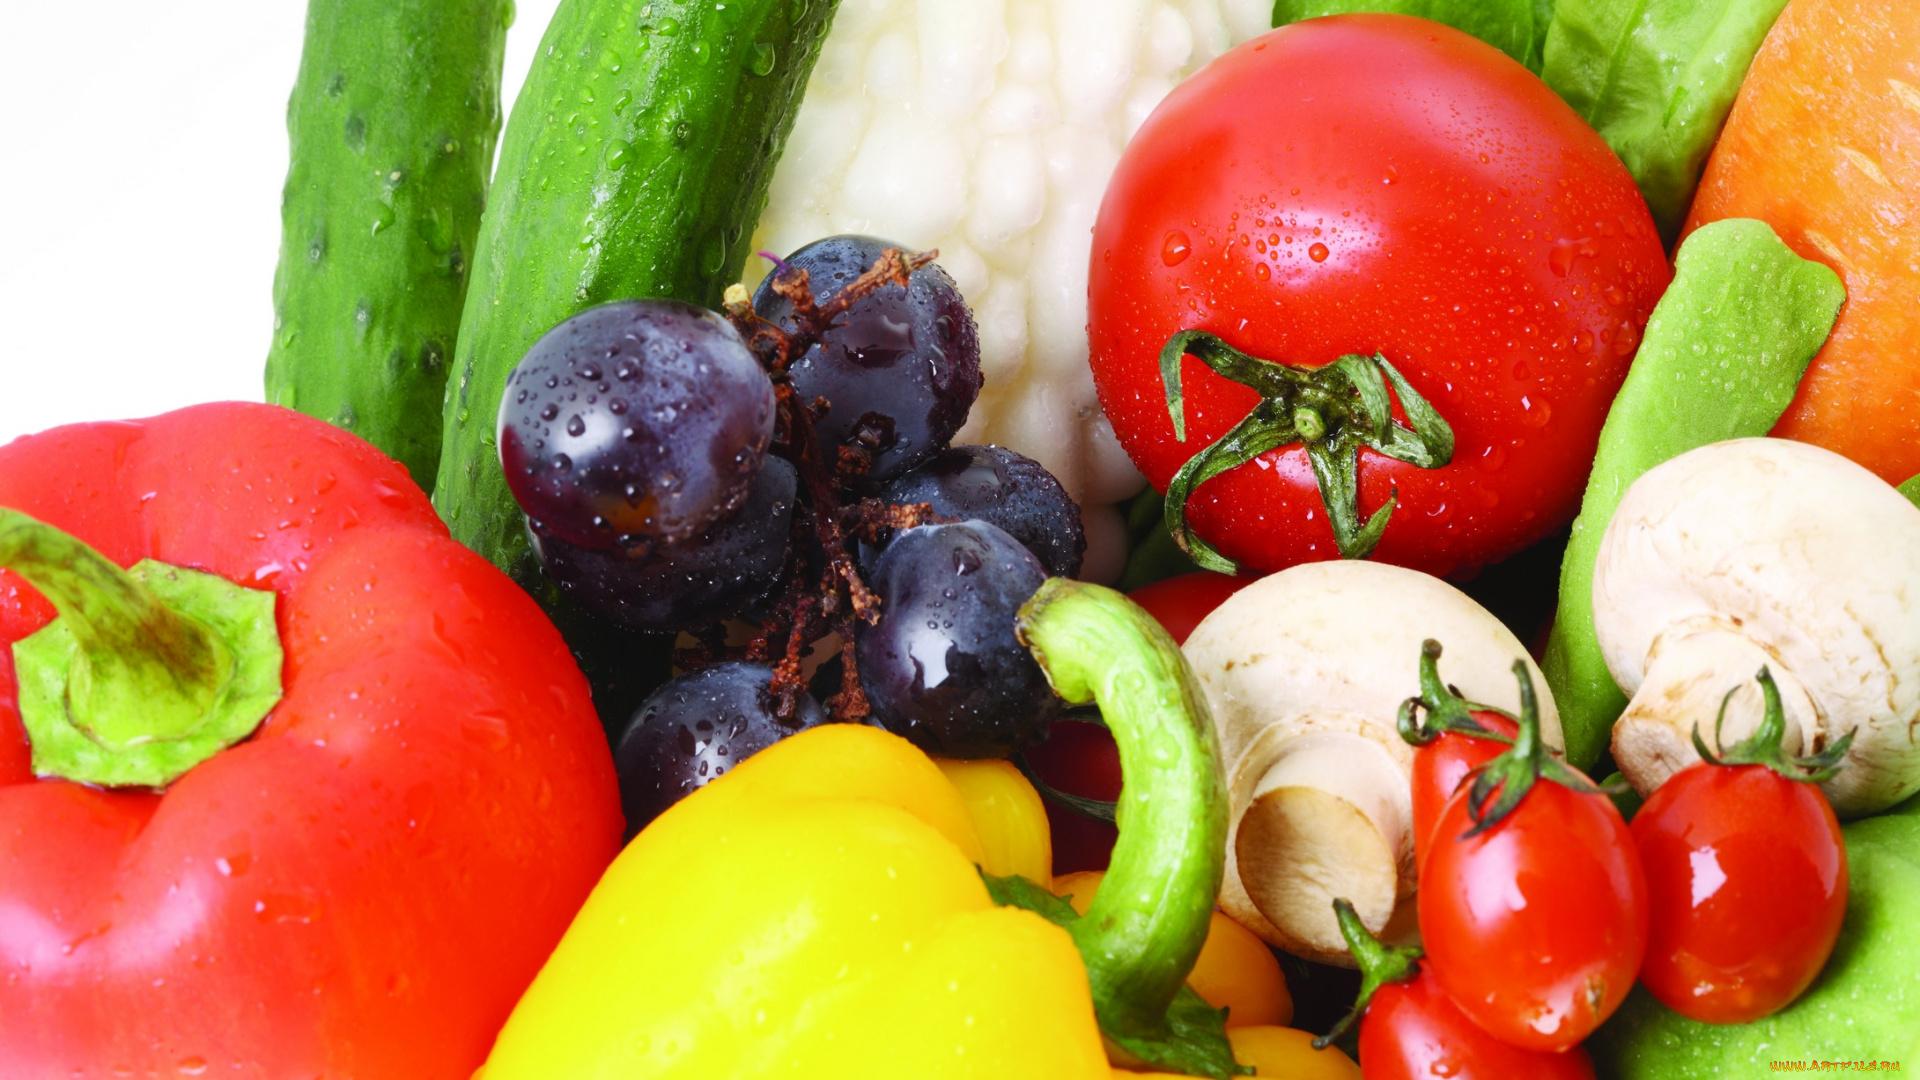 еда, разное, овощи, фрукты, болгарский, перец, красный, зелёный, оранжевый, морковь, виноград, черри, помидоры, шампиньоны, грибы, огурцы, листья, салата, томаты